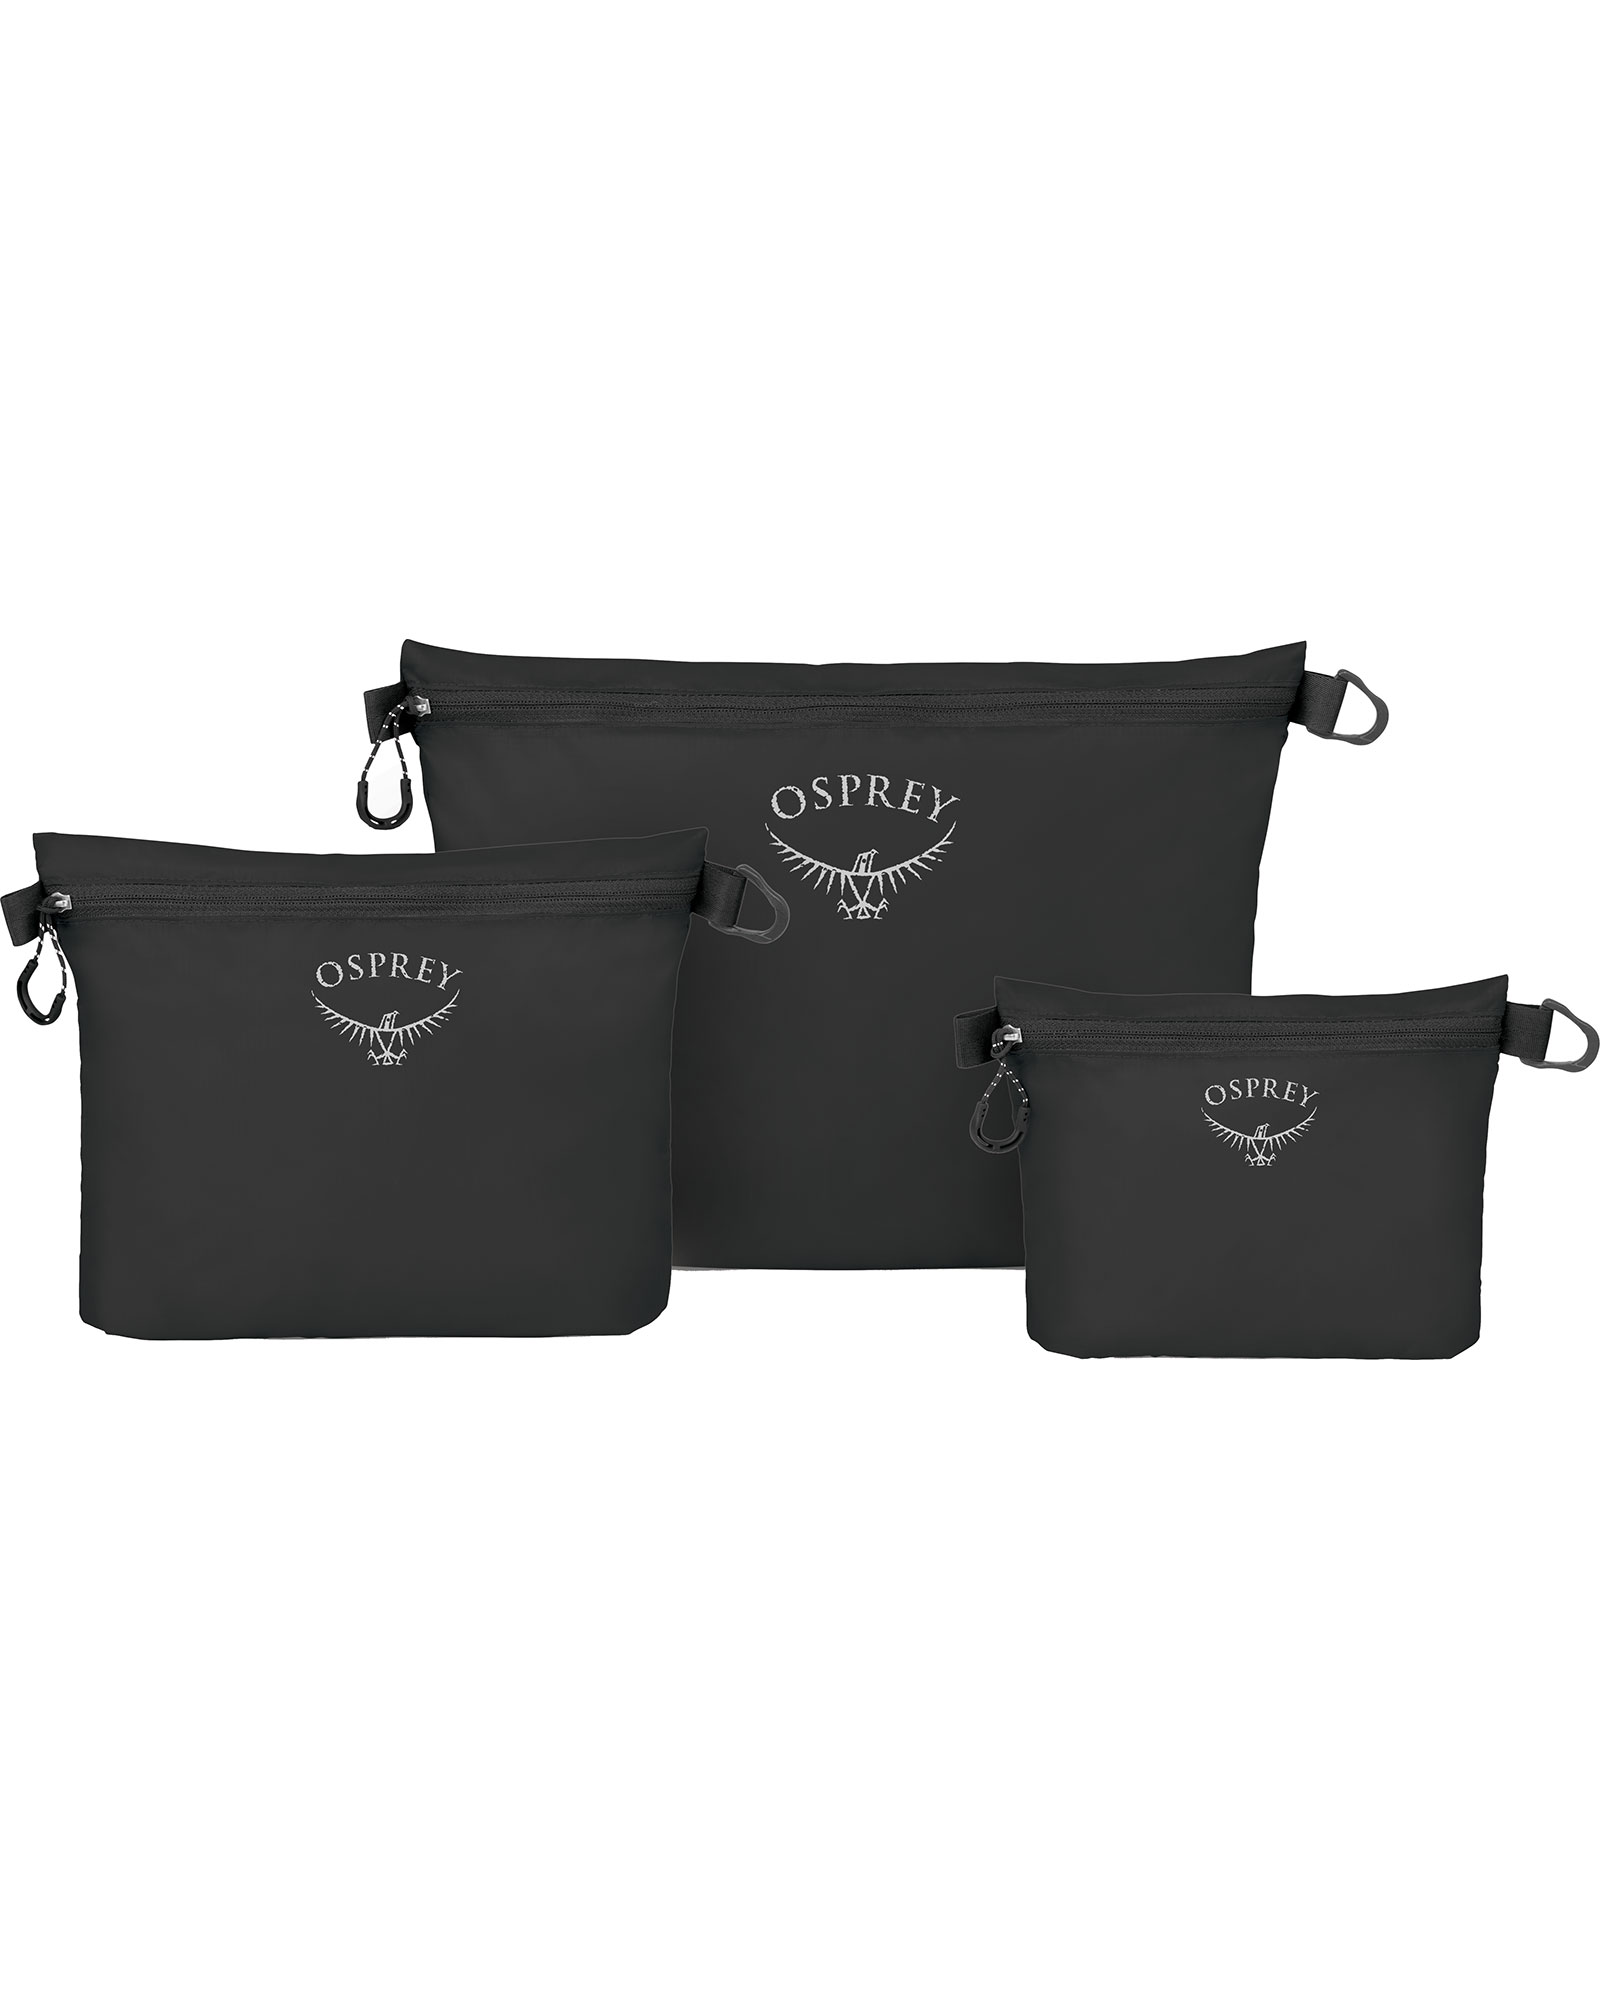 Osprey Ultralight Zipper Sack Set Packing Organiser